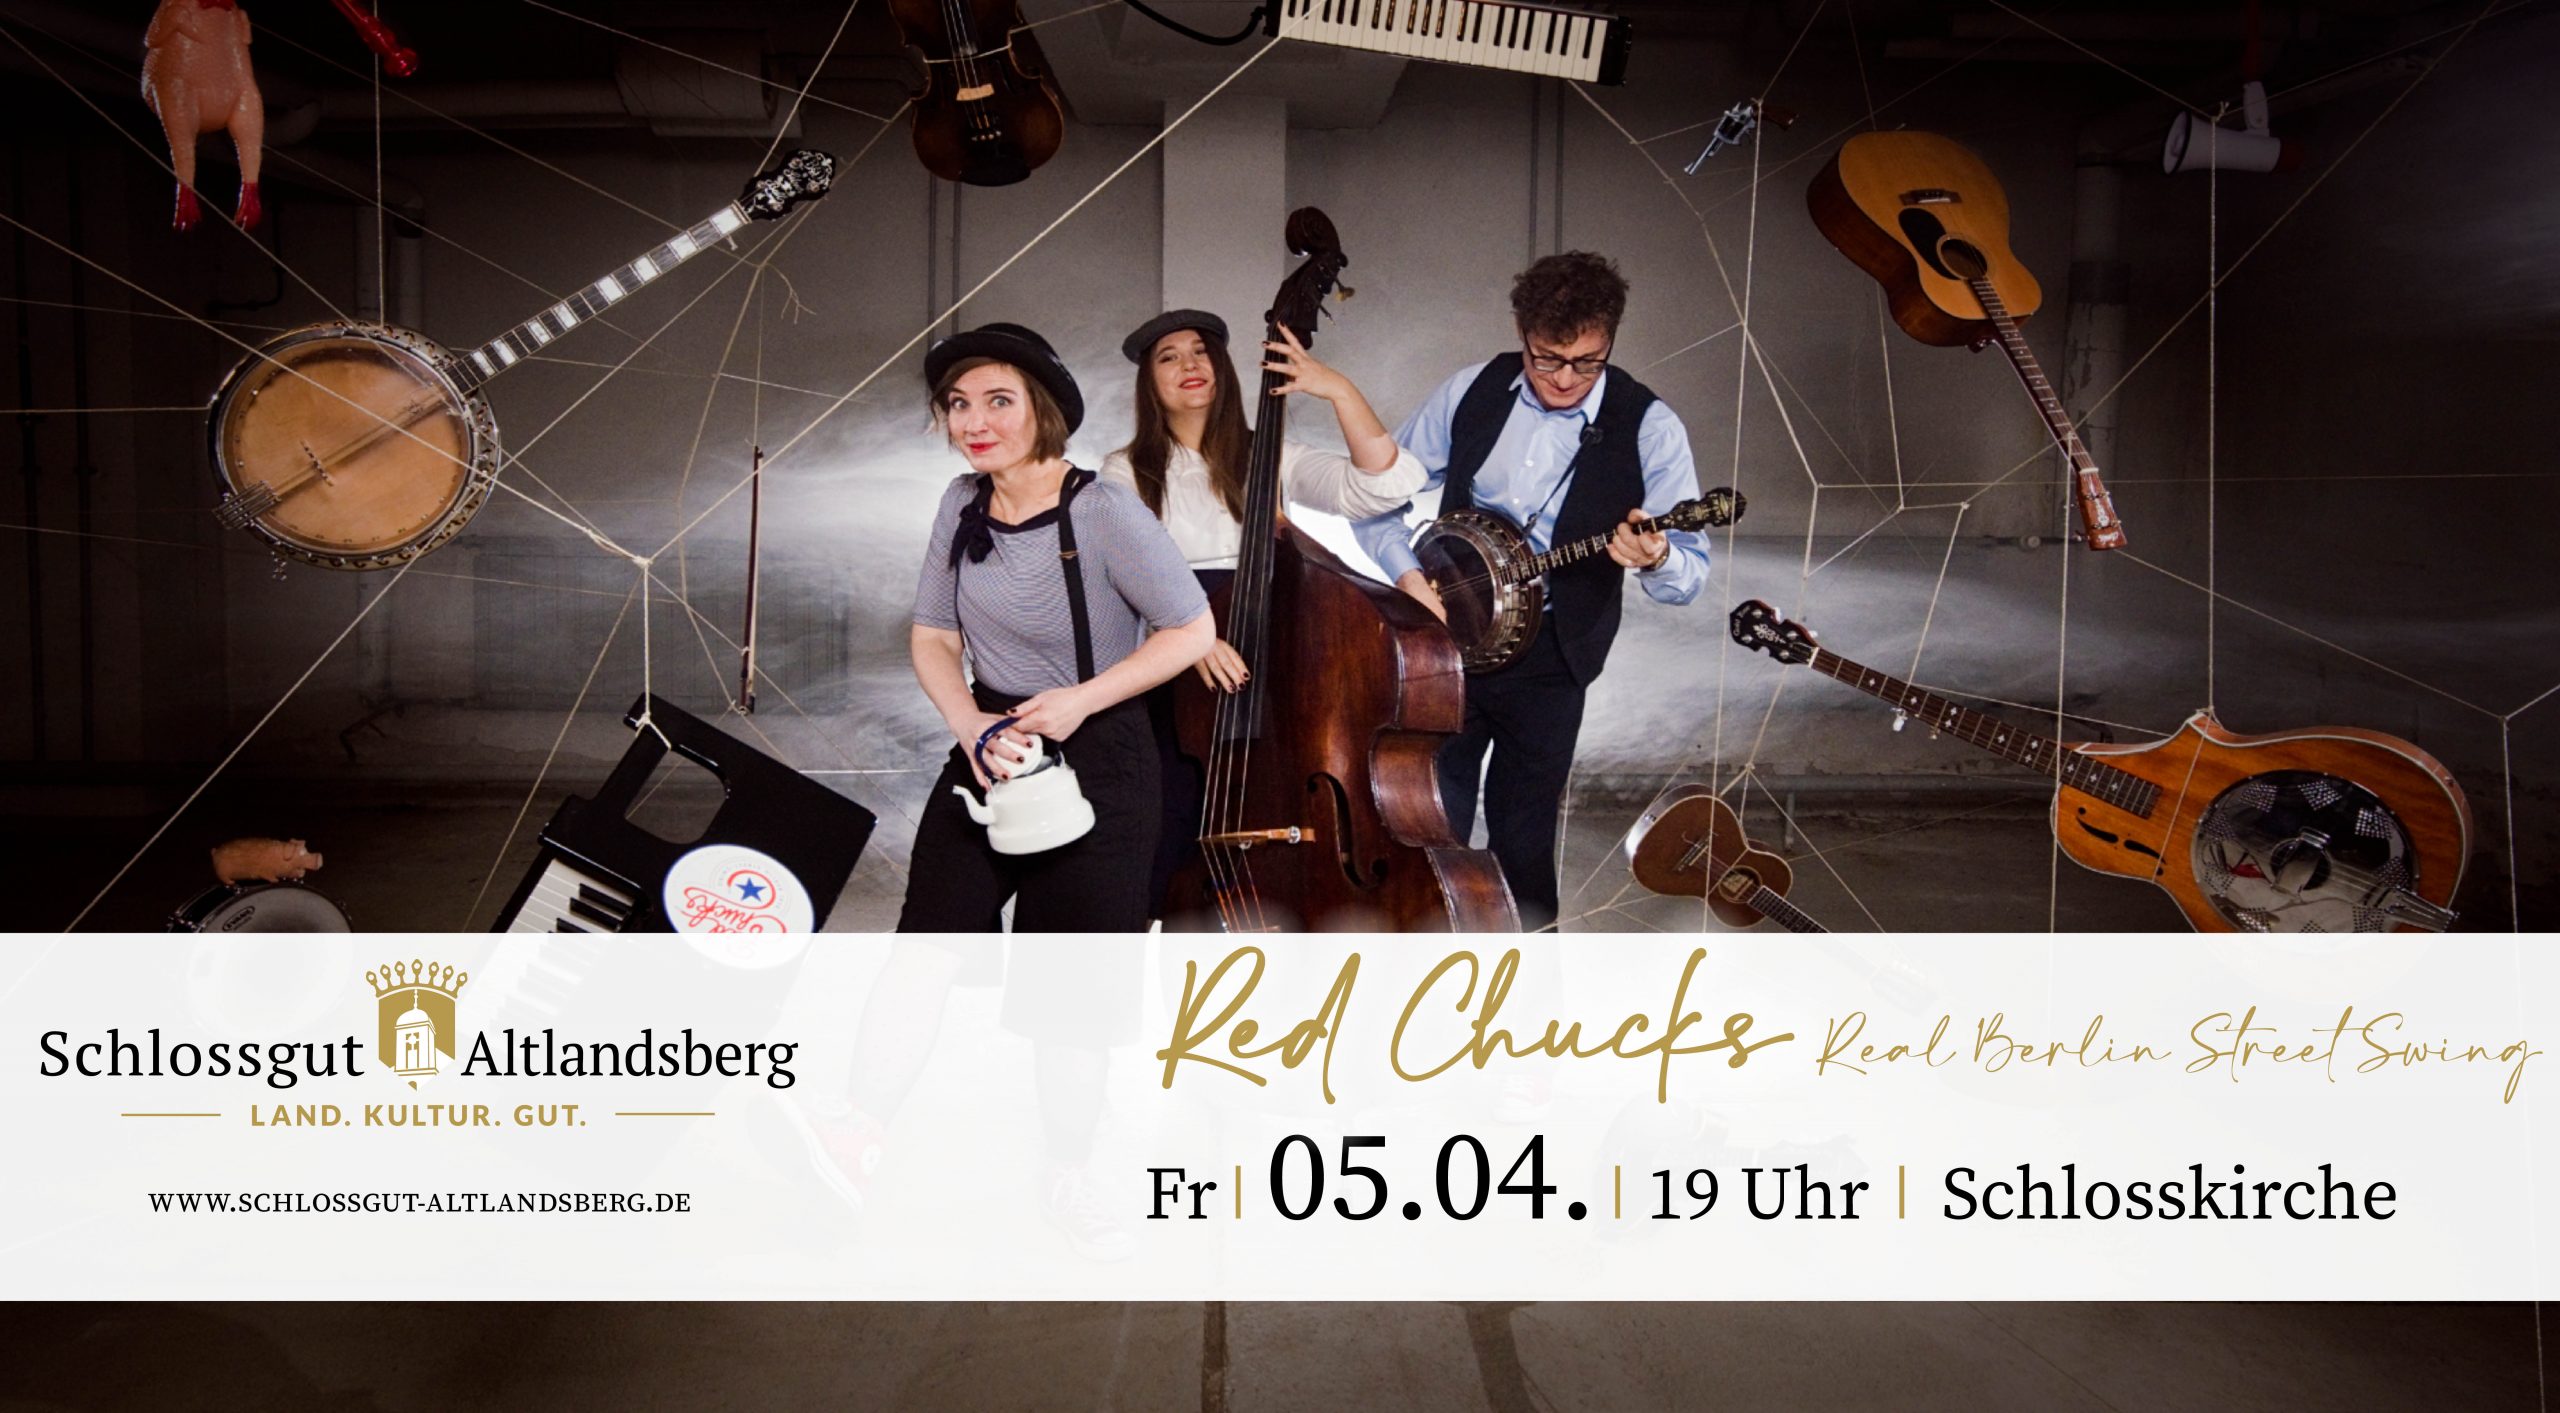 Bild der Band Red Chucks für die Vanstaltung am 5.4. ind Schlosskirche Altlandsberg